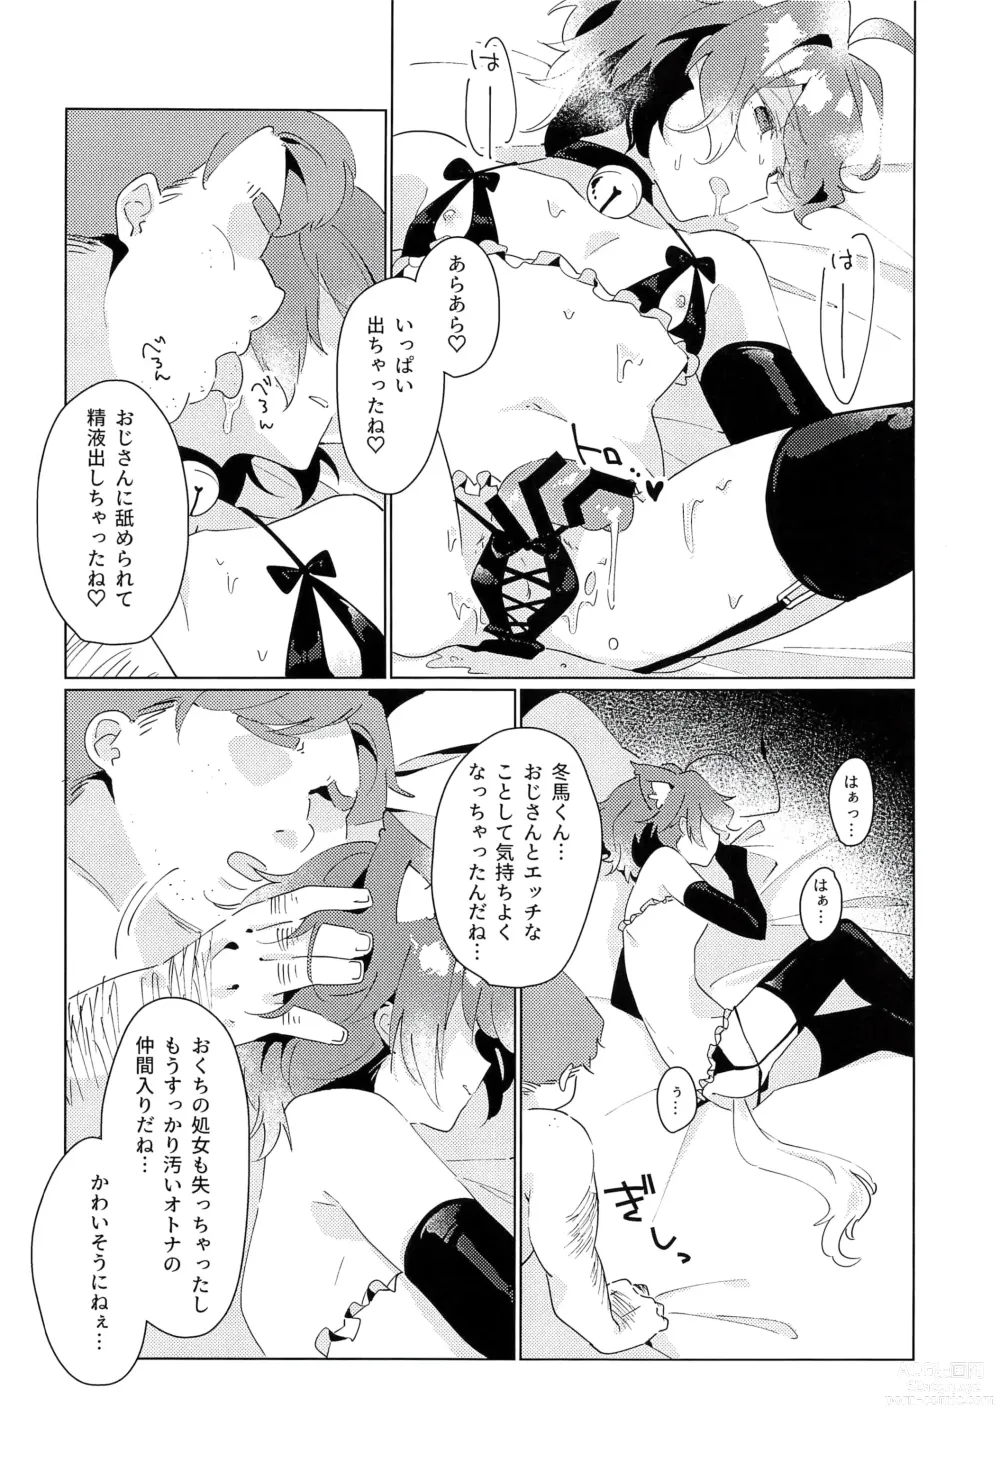 Page 20 of doujinshi naive.